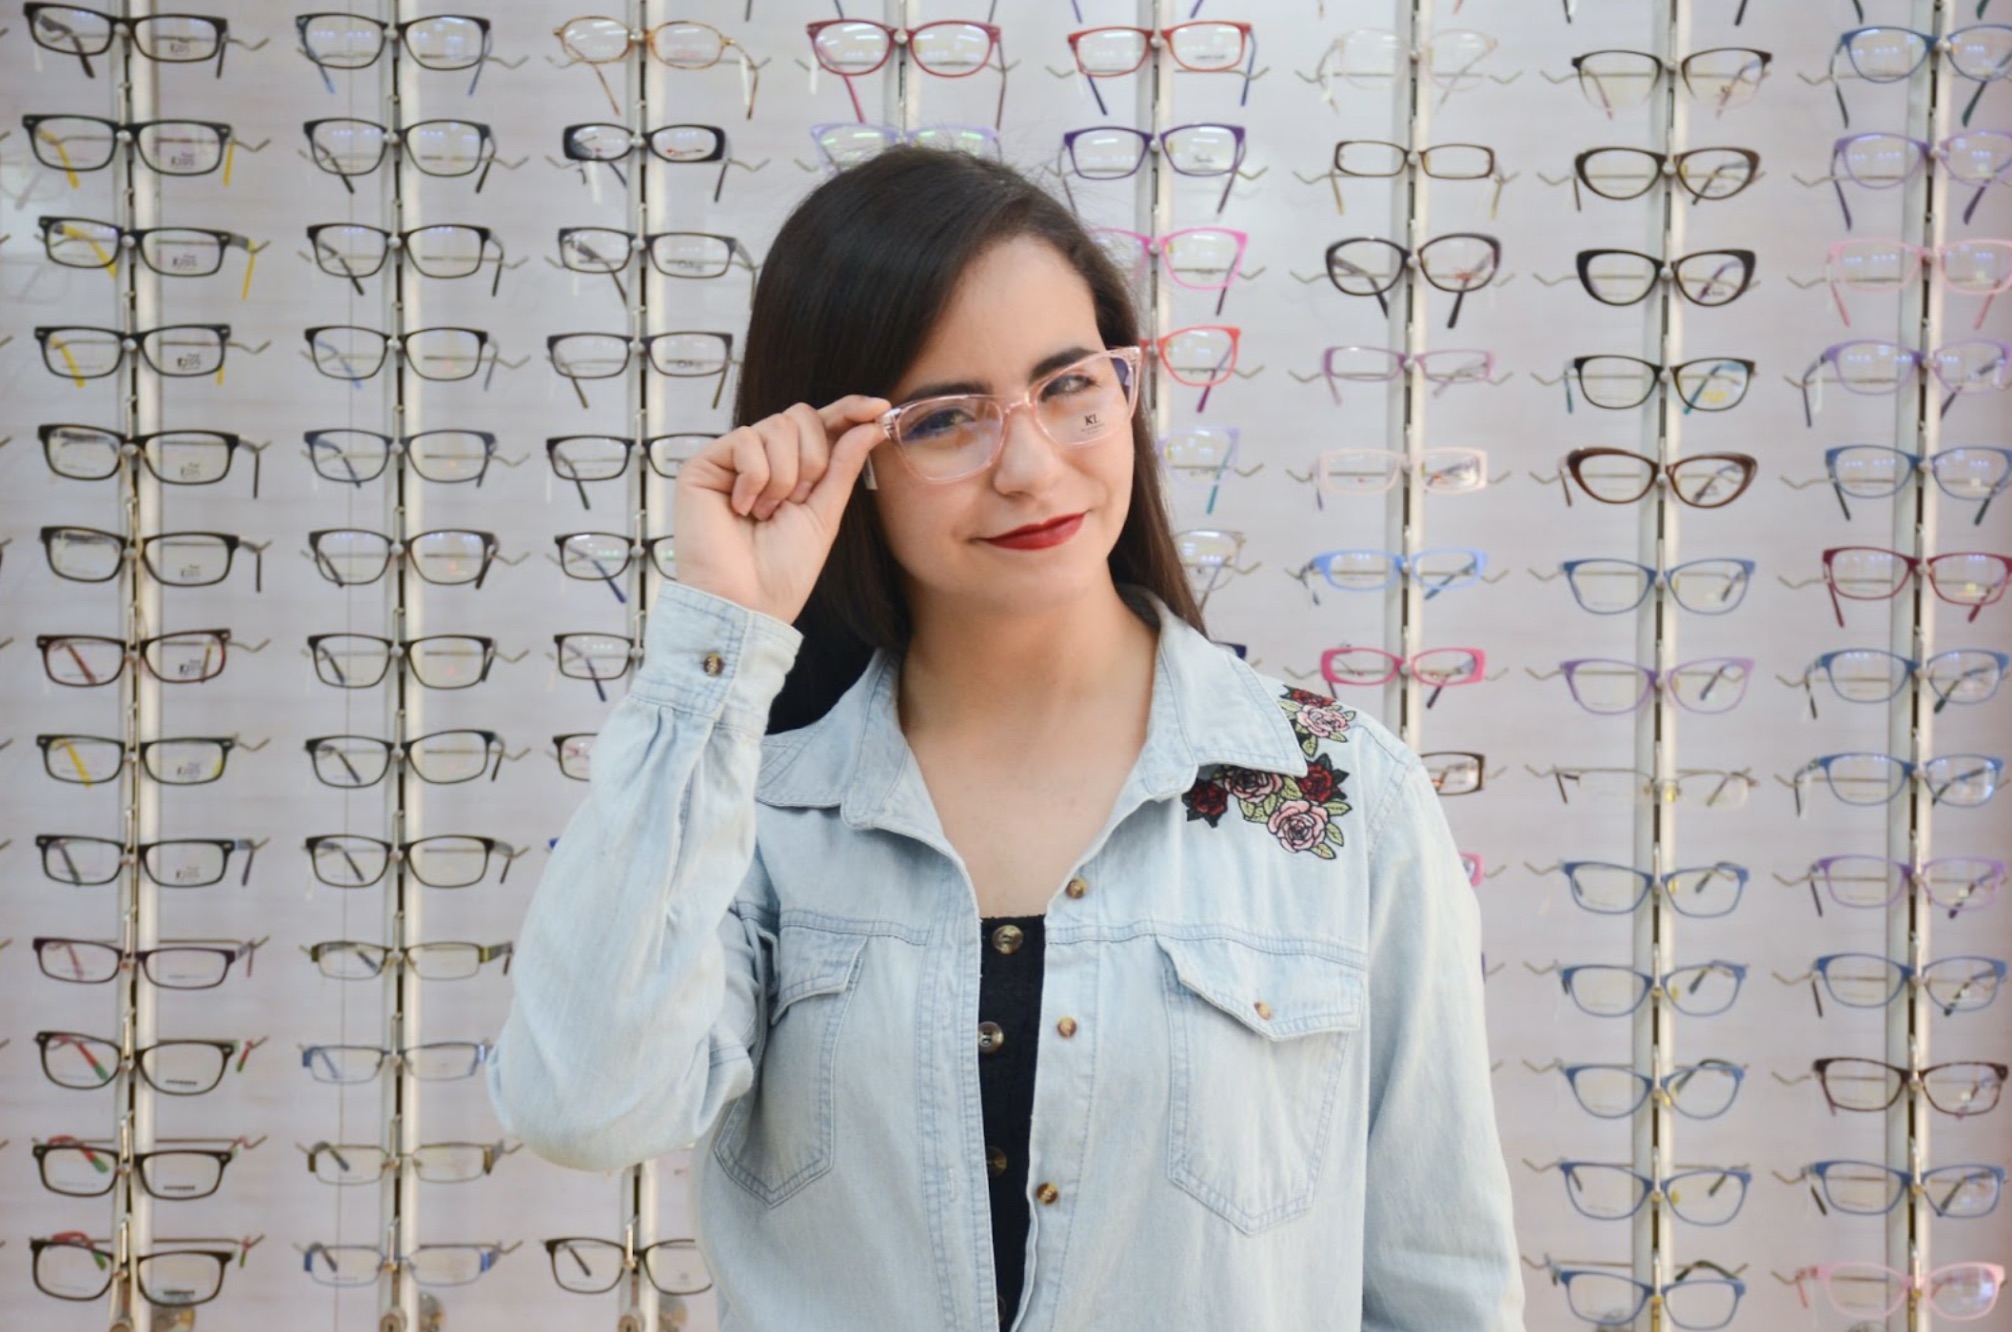 a women wearing eye glasses